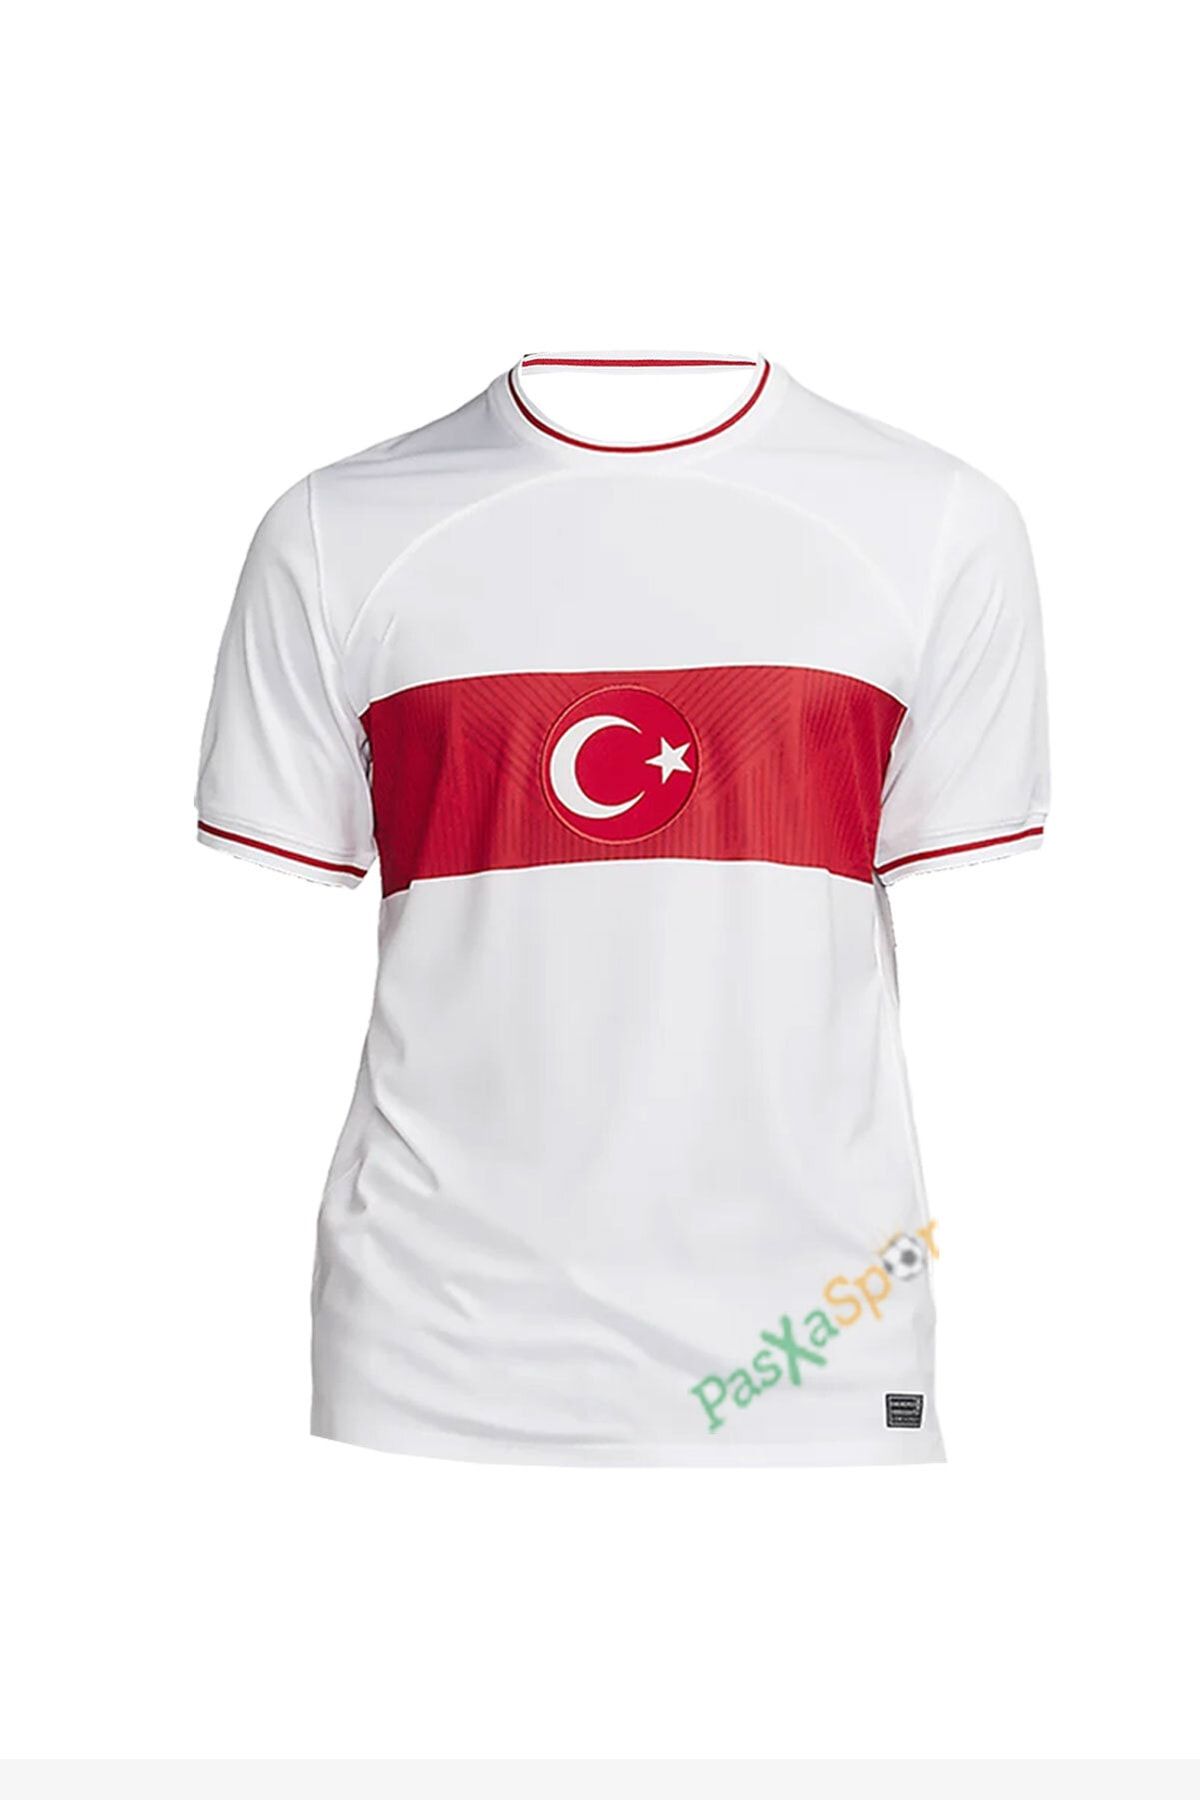 Pasxaspor Yeni Sezon Türkiye Beyaz Maç Forması